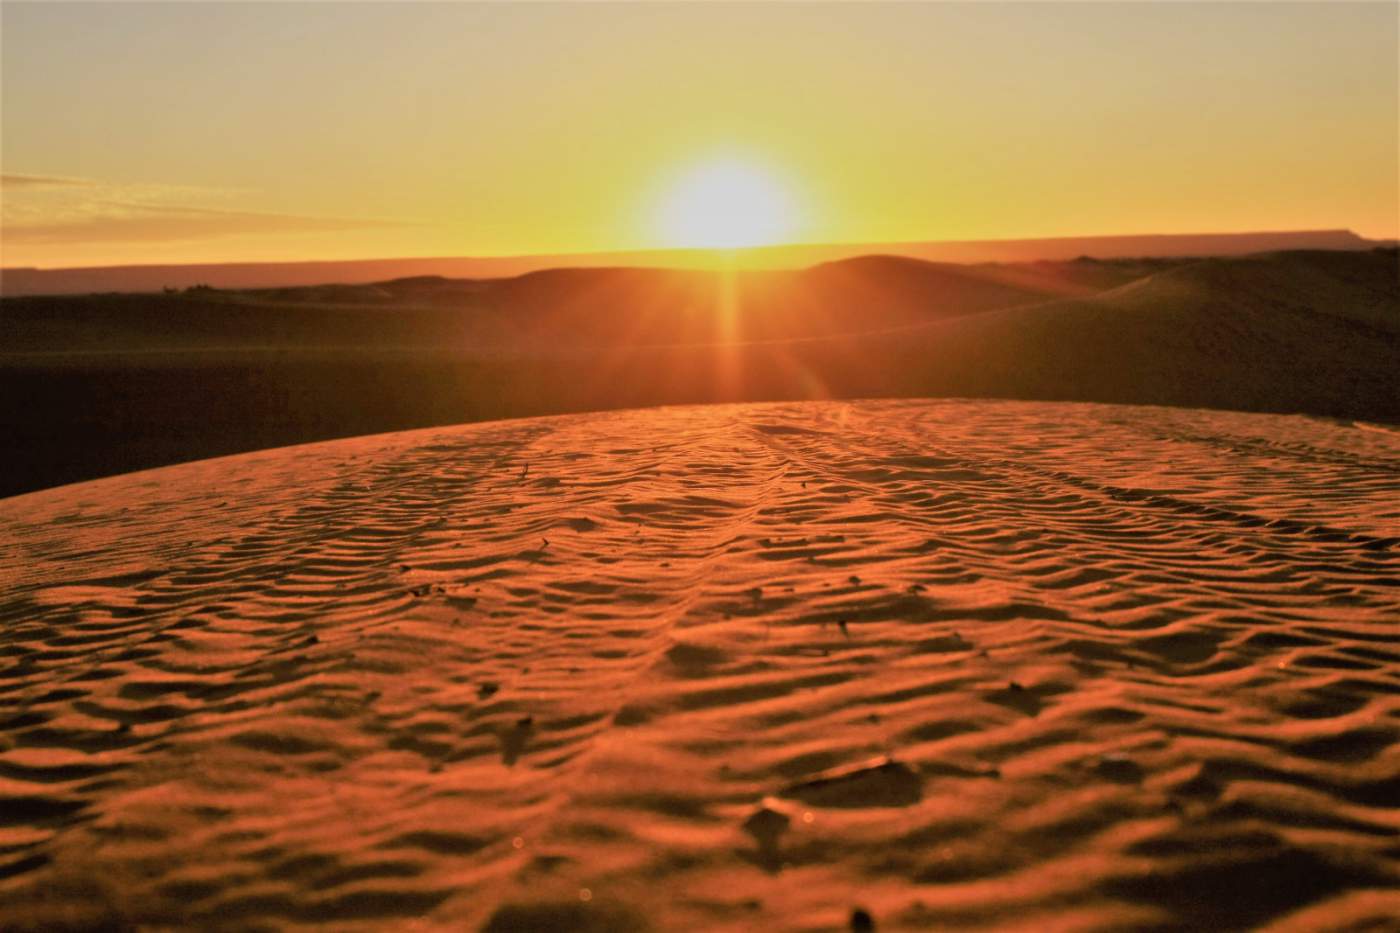 Sonnenuntergang auf der Geländewagenreise in der Sahara in Marokko